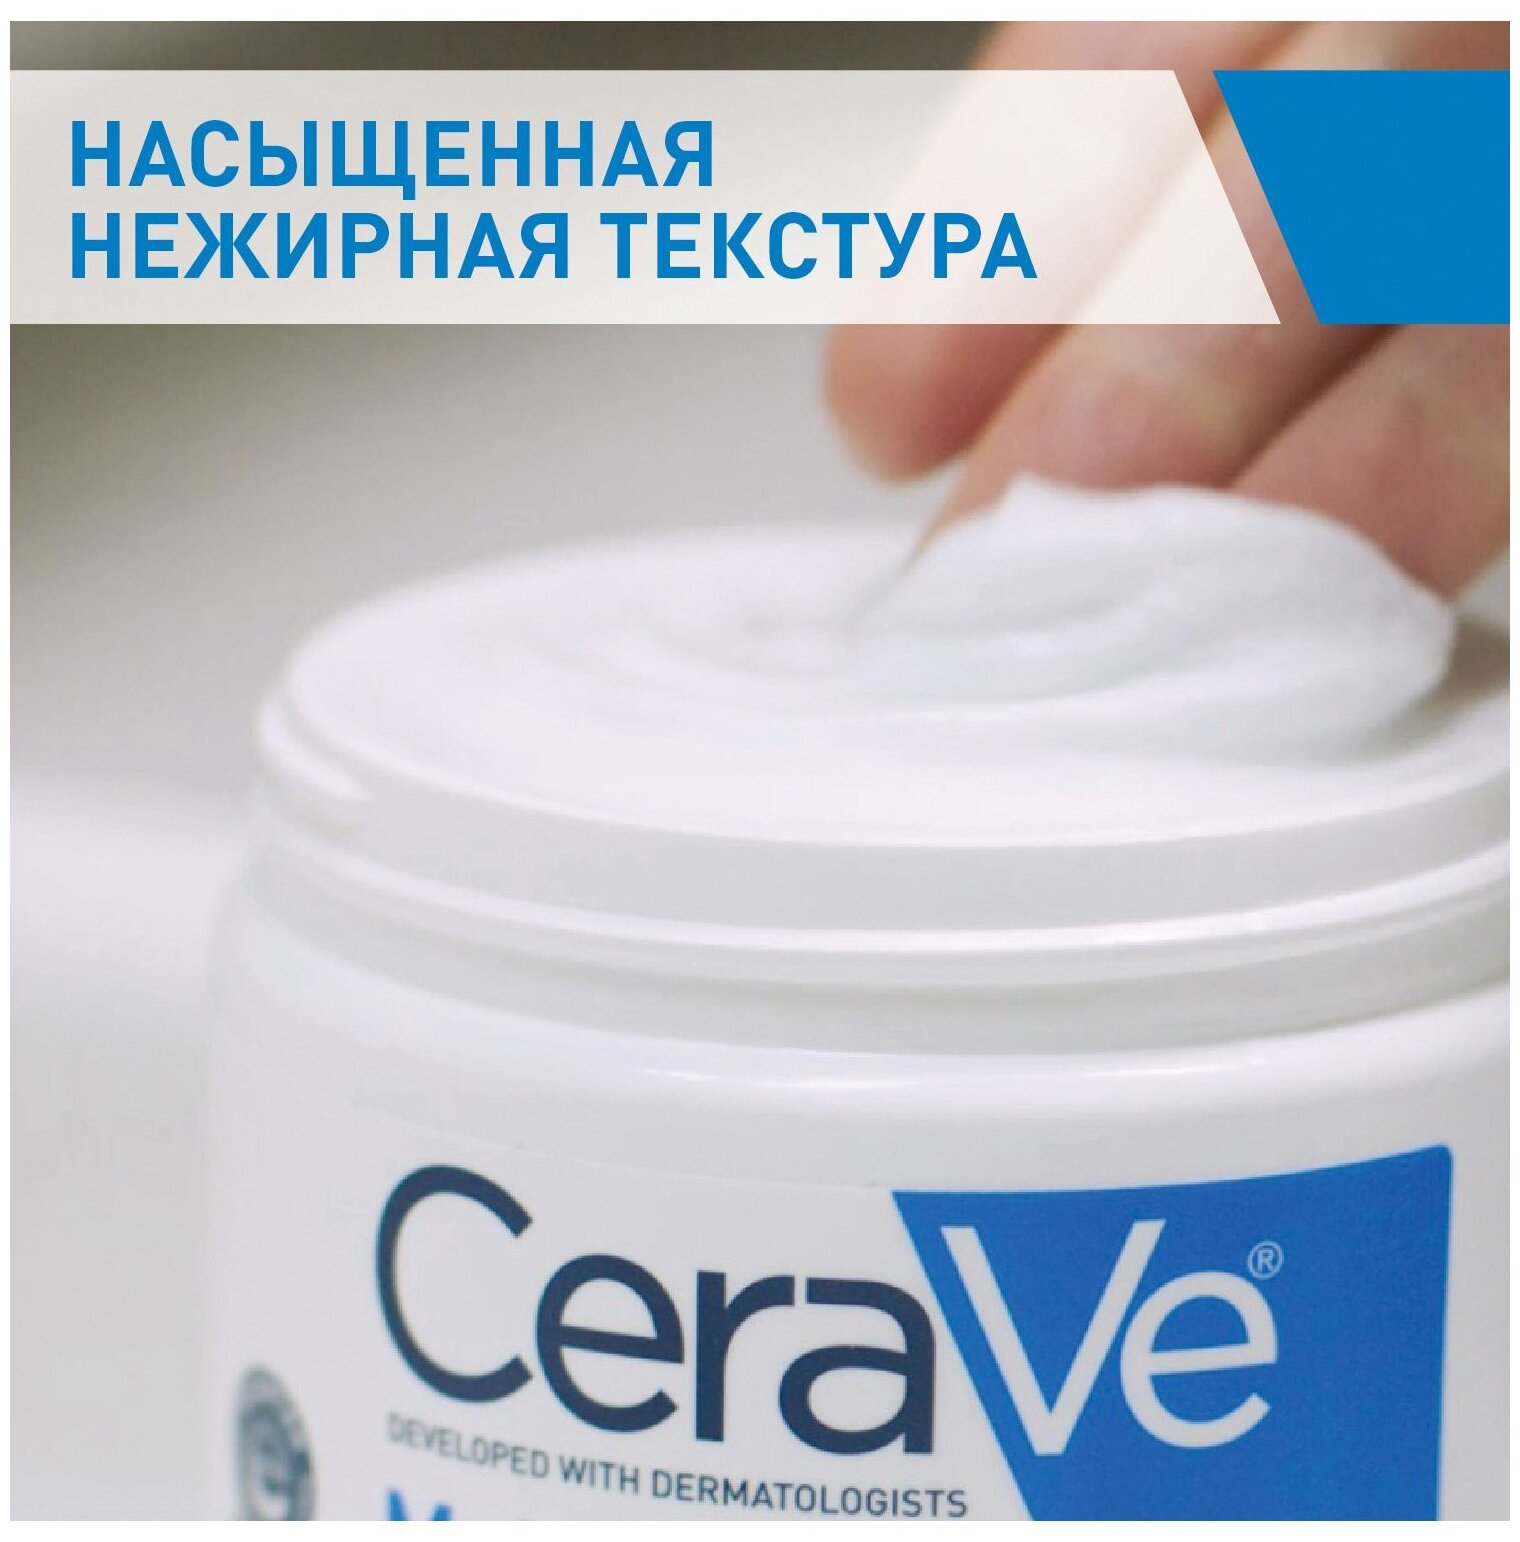 Крем CeraVe (Цераве) увлажняющий для сухой и очень сухой кожи лица 340 г Косметик Актив Продюксьон - фото №3